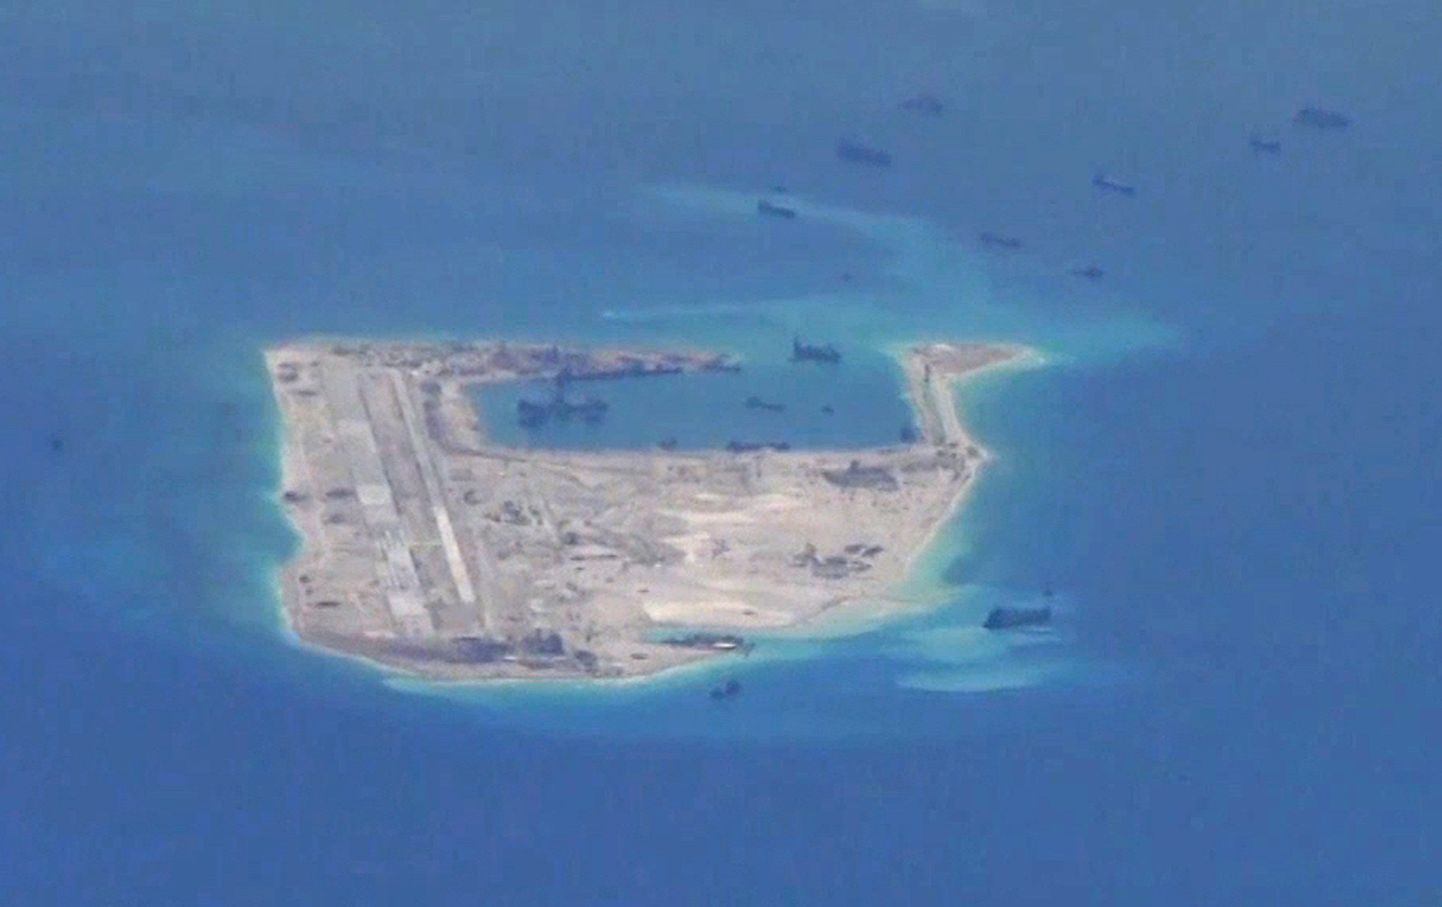 Hiina alused vaidlusaluse Spratly saarestiku ümbruses Lõuna-Hiina meres. Kaader USA valvelennukite tehtud videost.